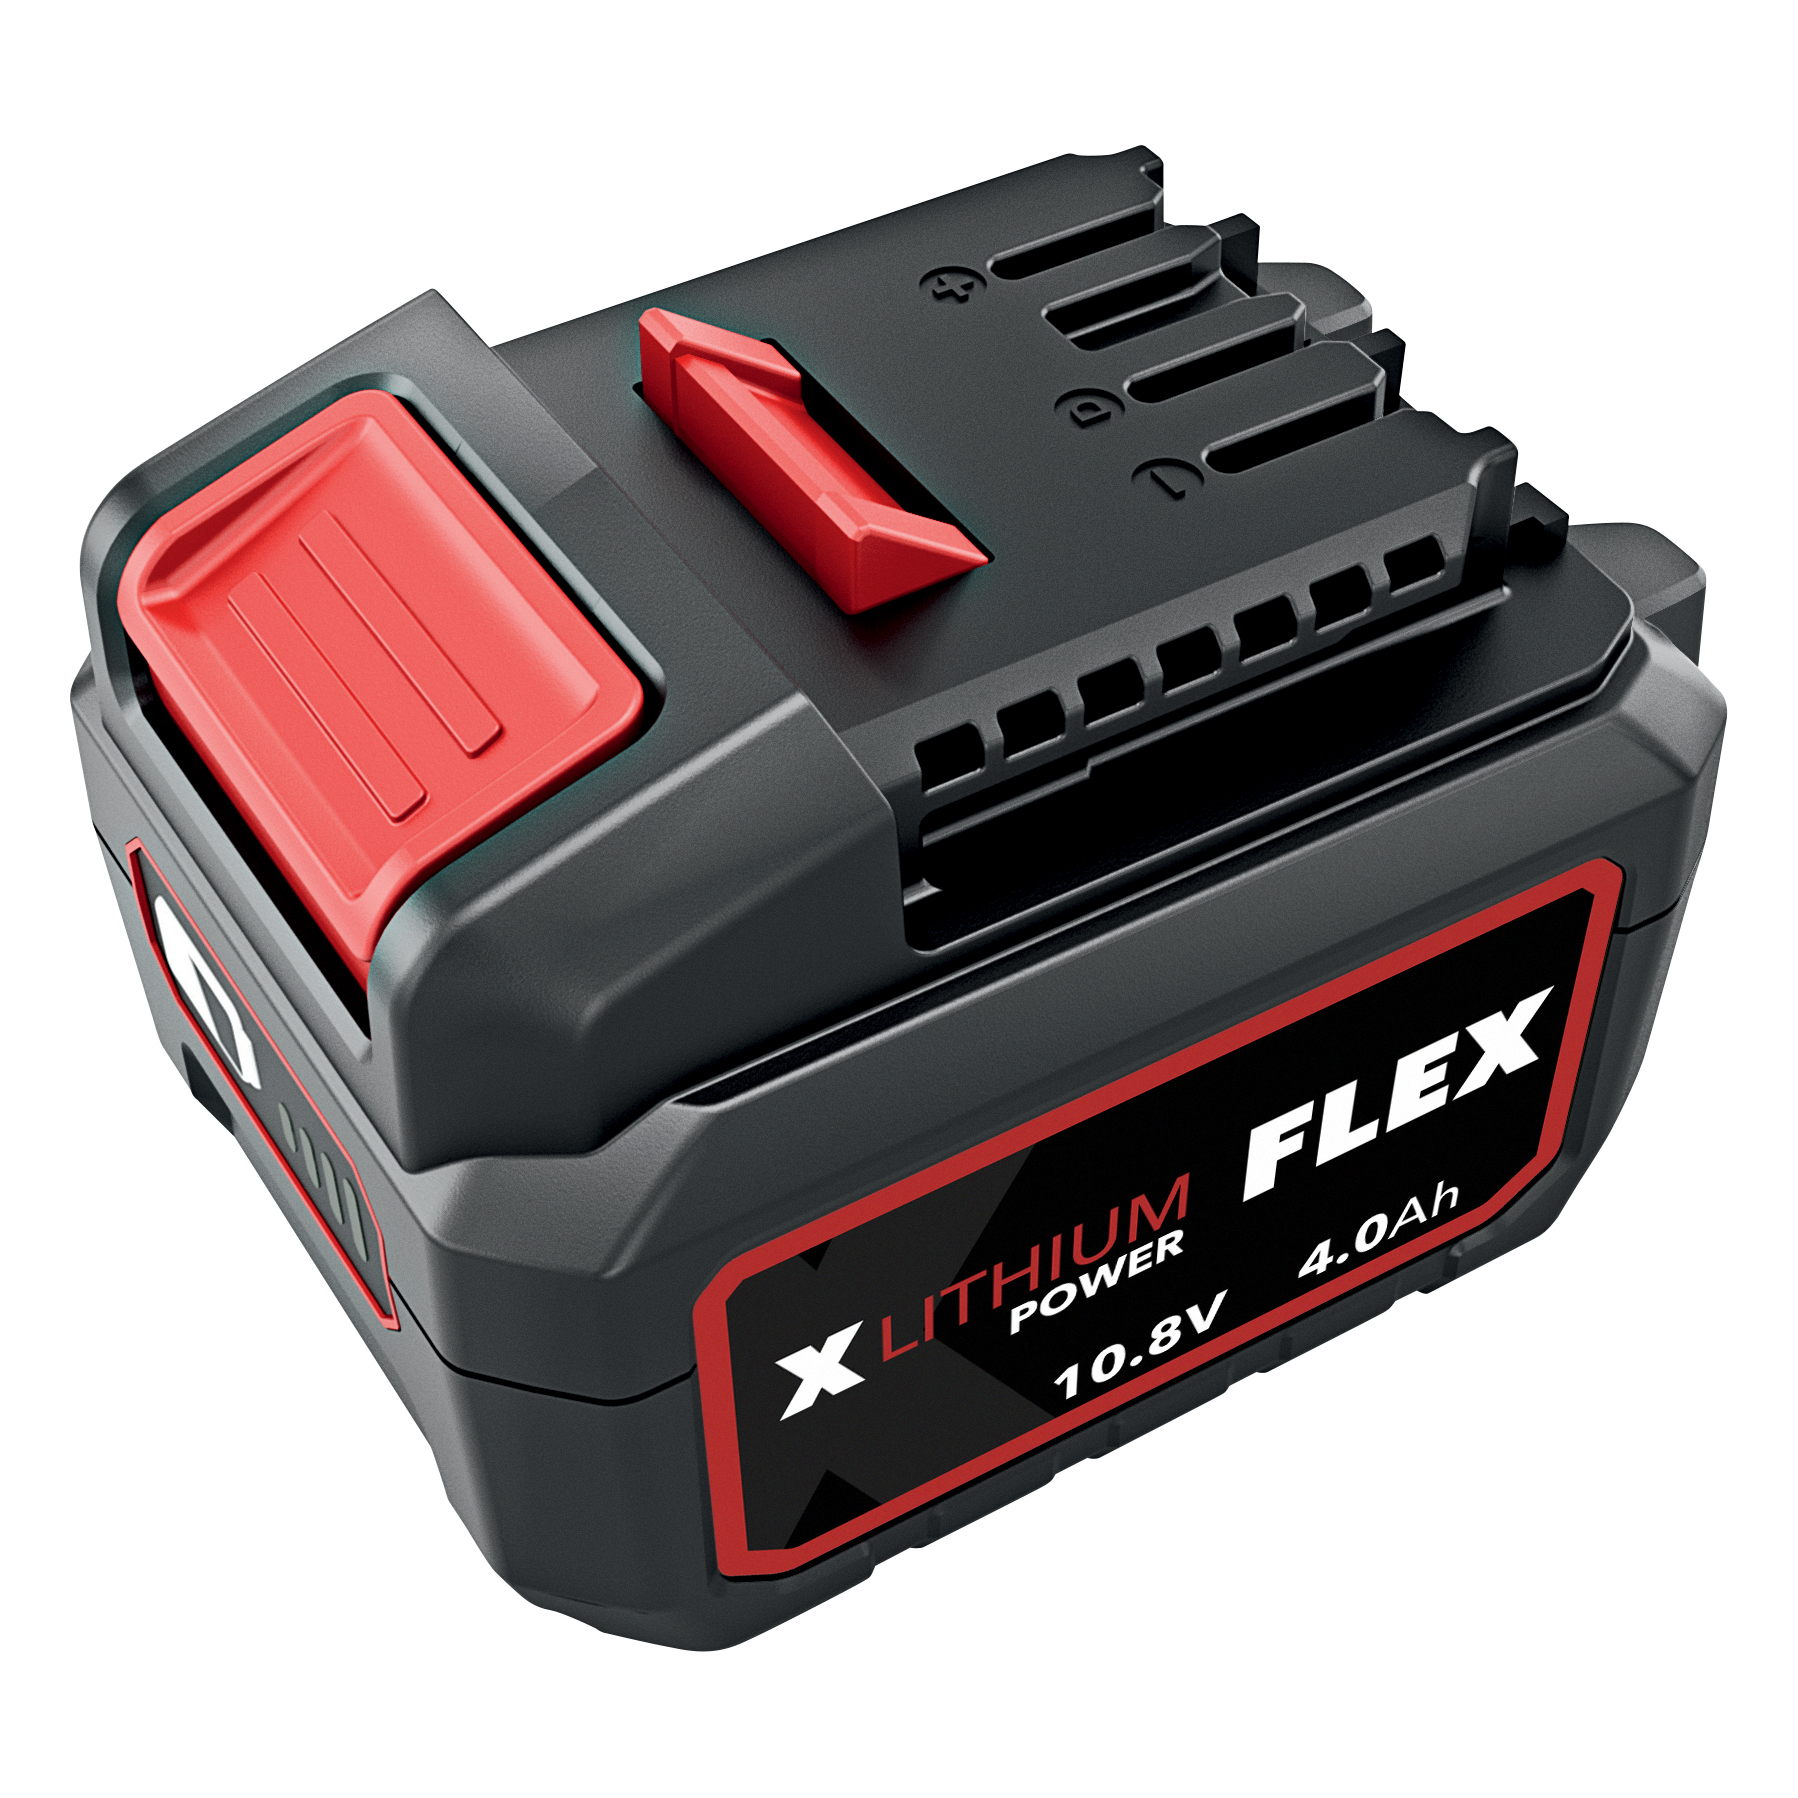 FLEX-TOOL Akku-Pack Li-Ion AP 10.8/4.0